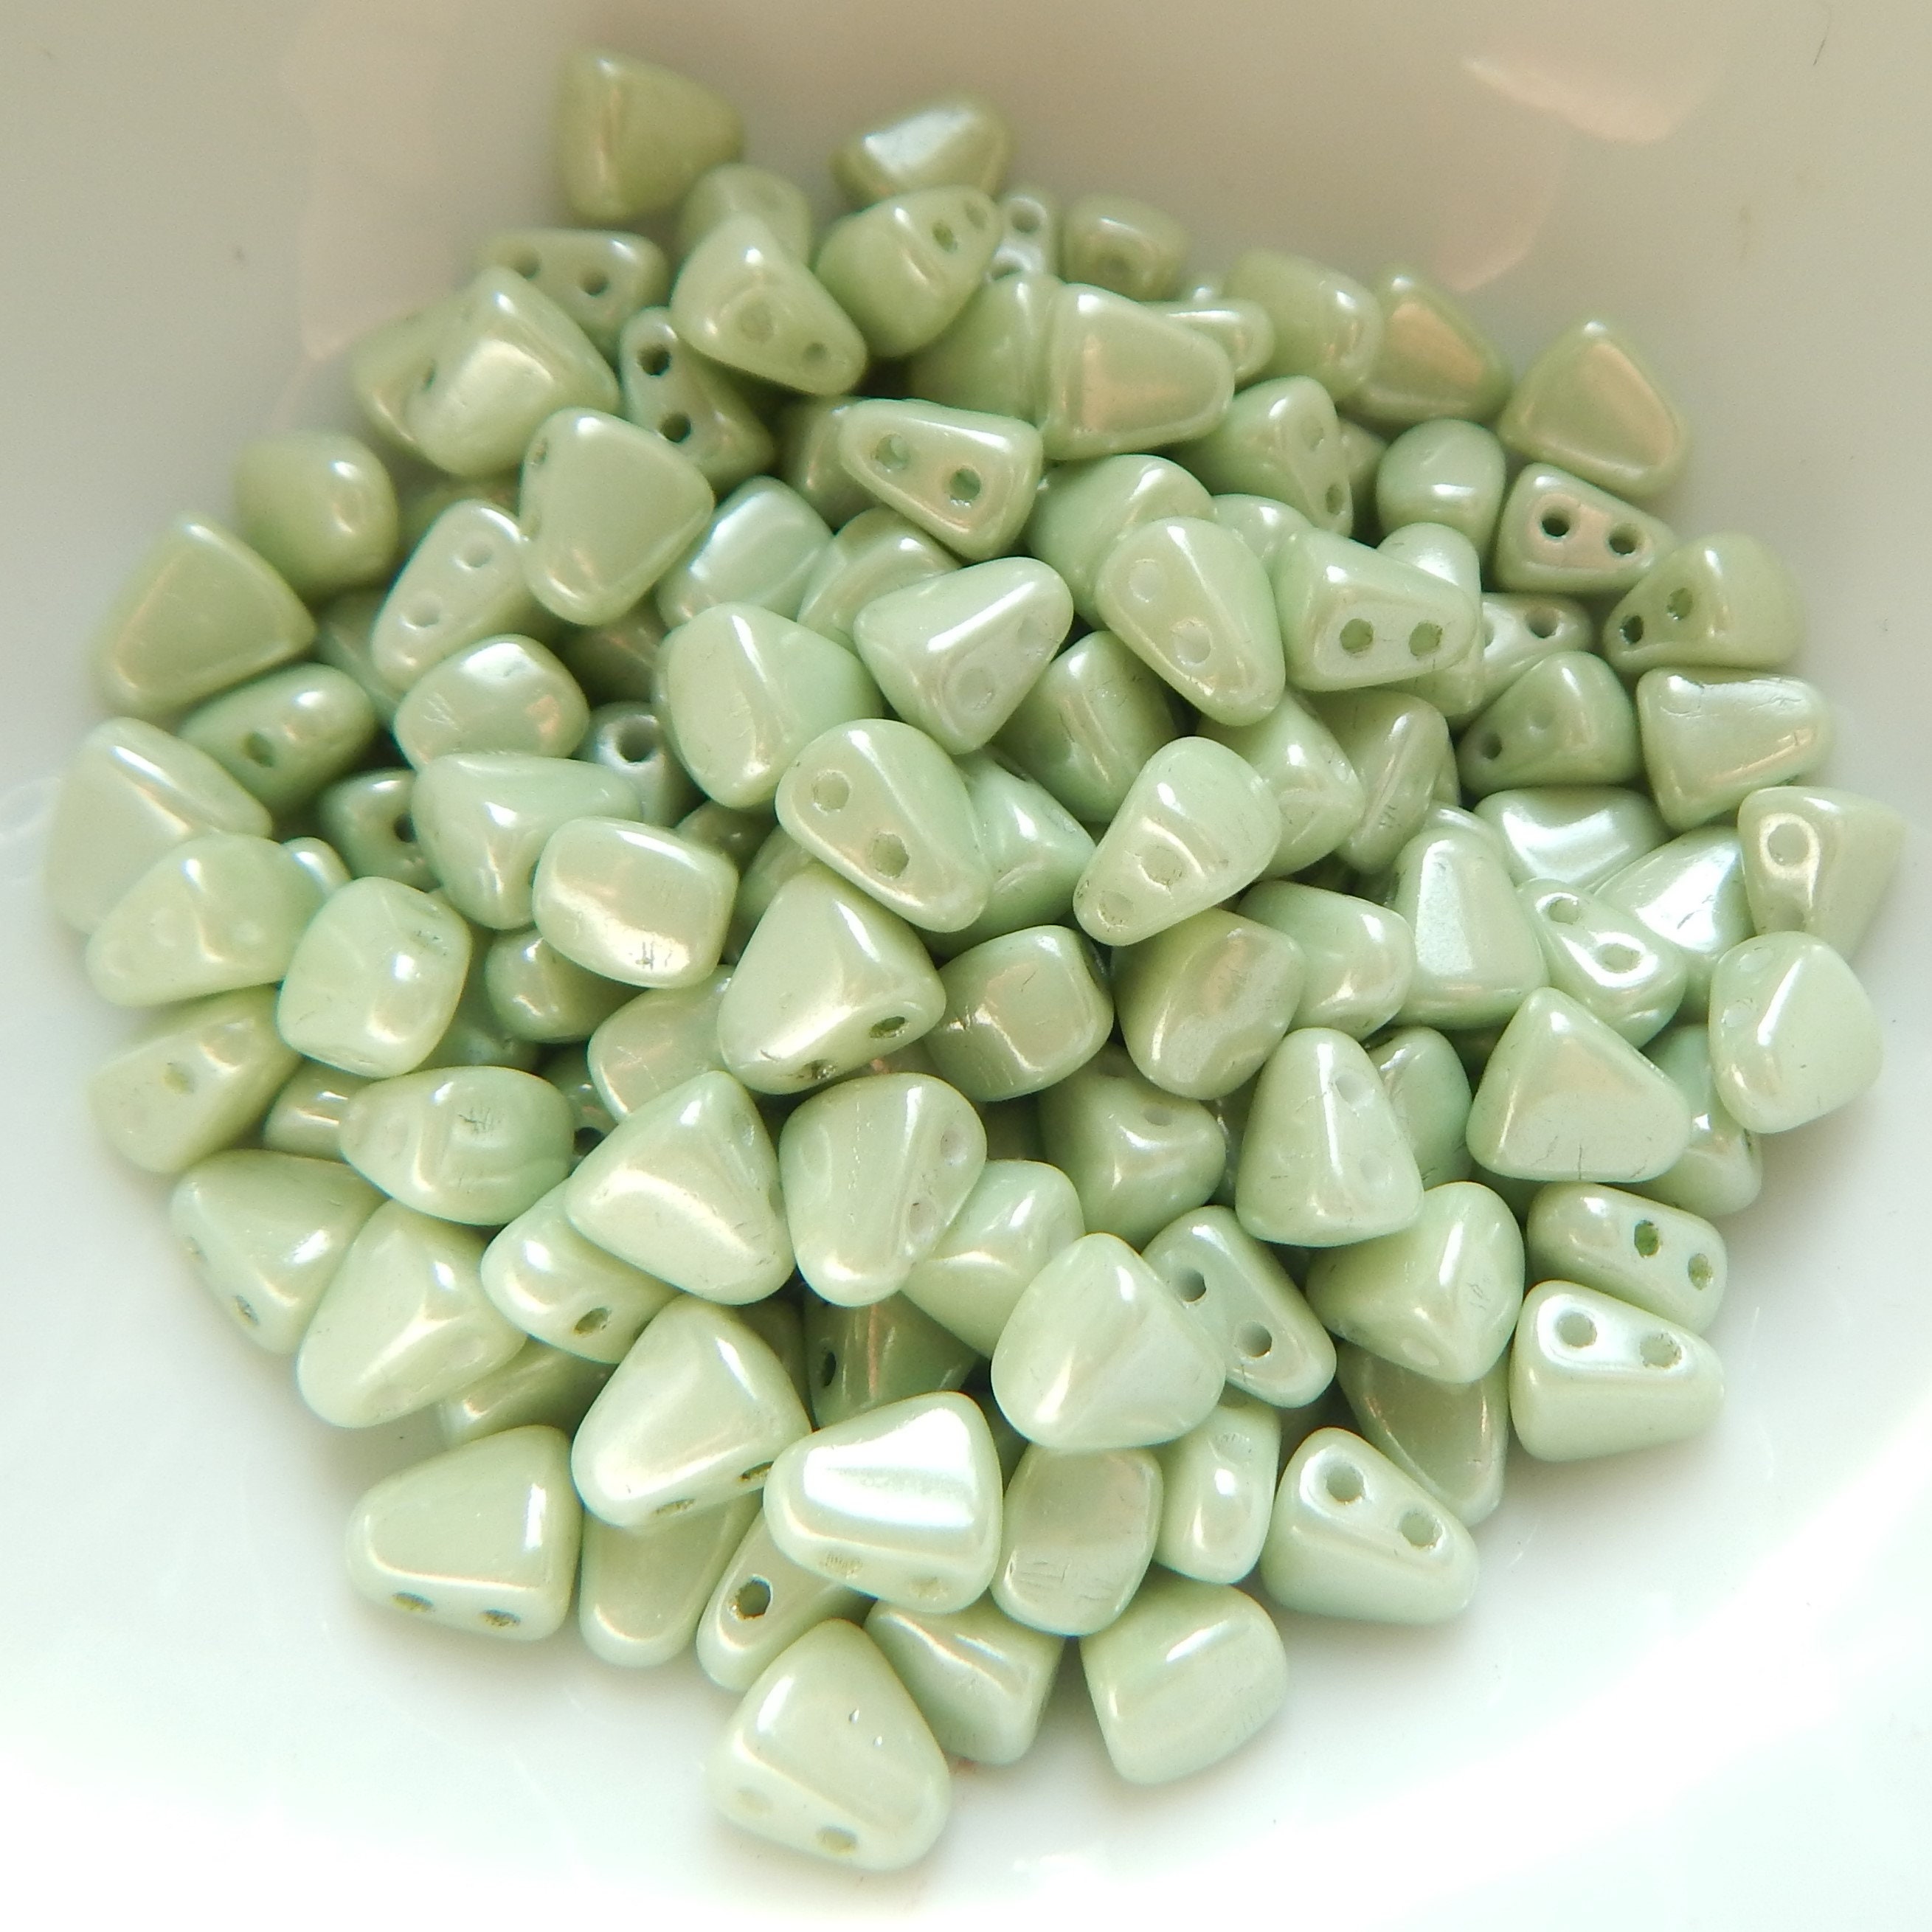 Dixie Belle Green Chalk Mineral Paint Mint Julep Light Green 